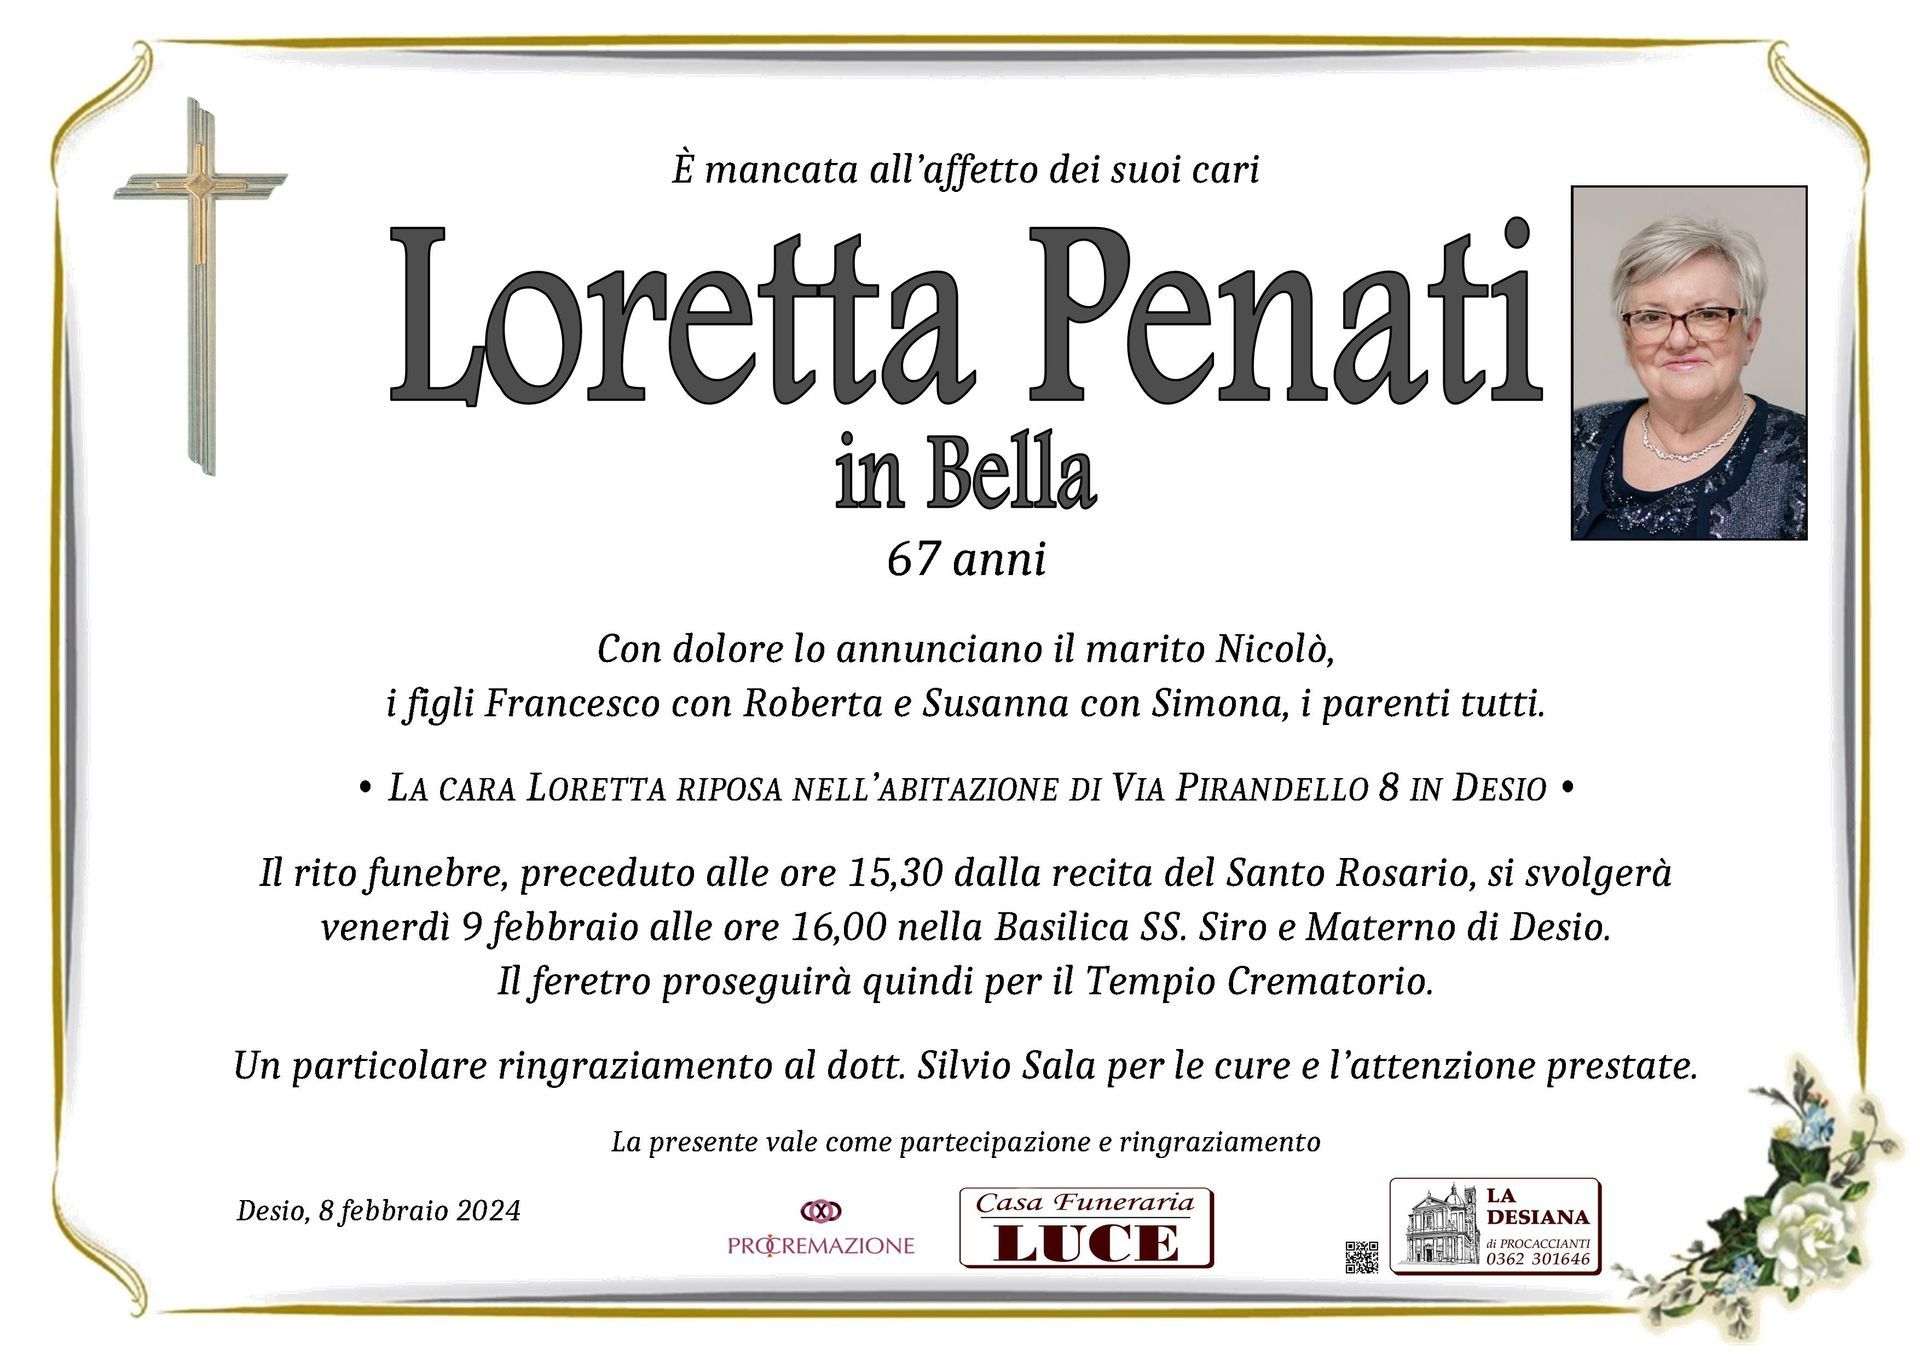 Loretta Penati in Bella